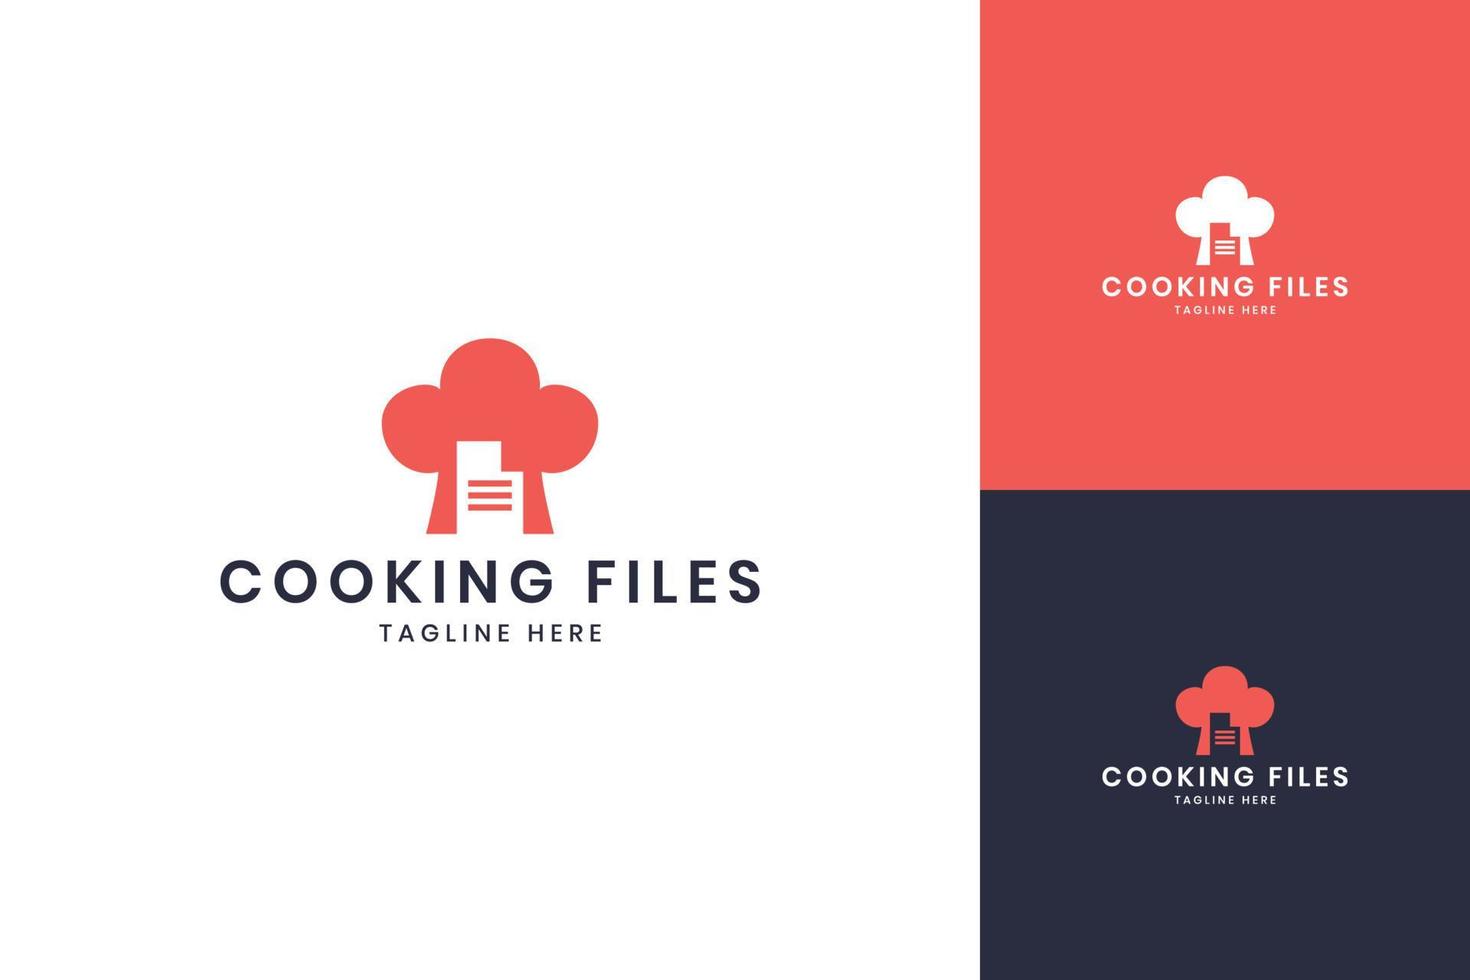 conception de logo d'espace négatif de fichiers de cuisine vecteur